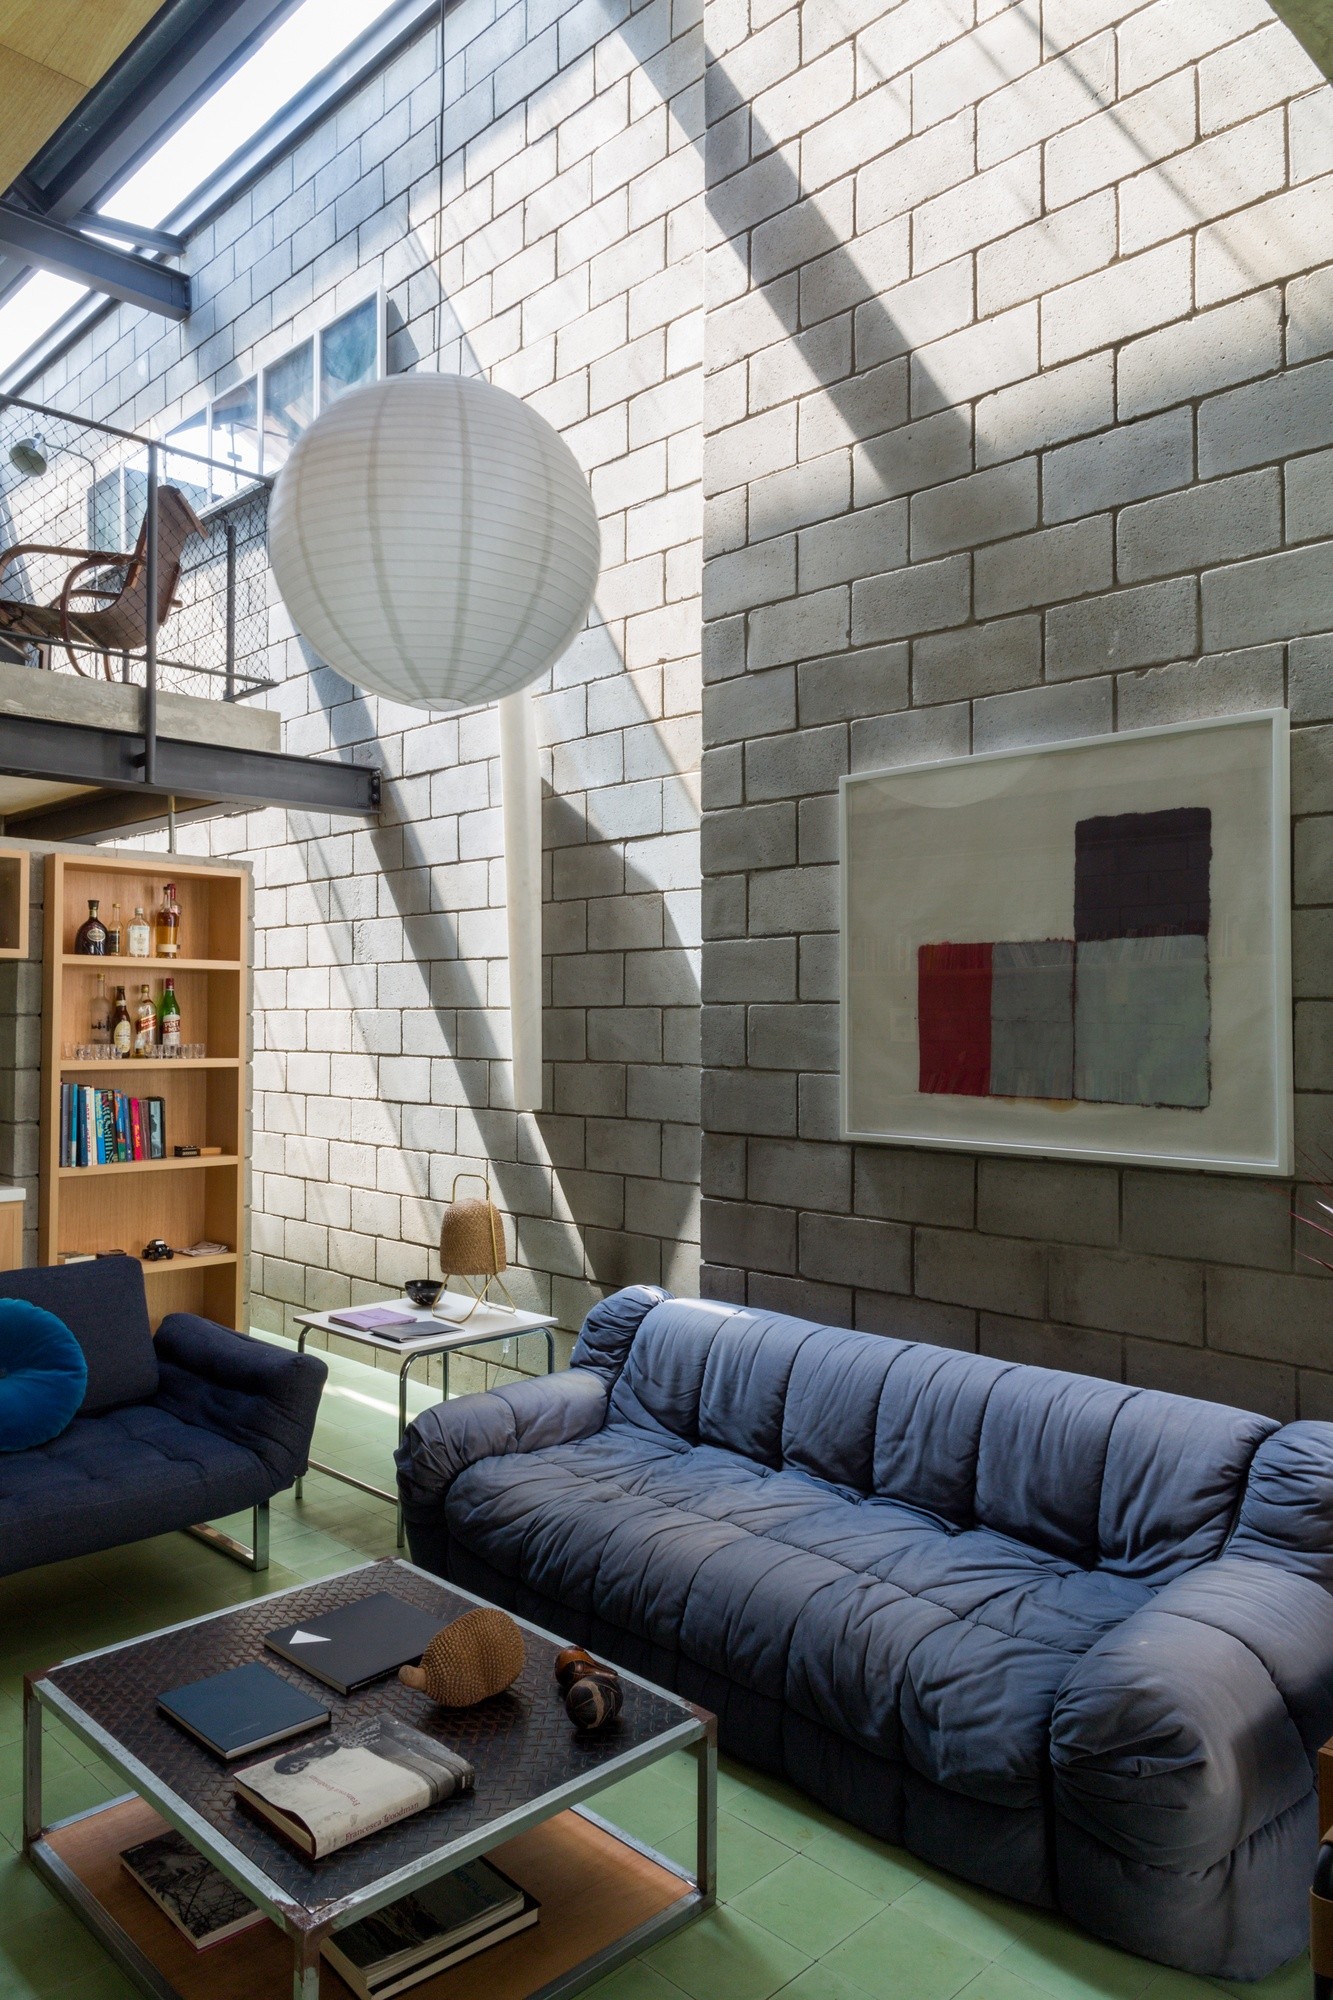 Décor do dia: sala de estar com pé-direito alto e blocos de alvenaria (Foto: Pedro Napolitano Prata)